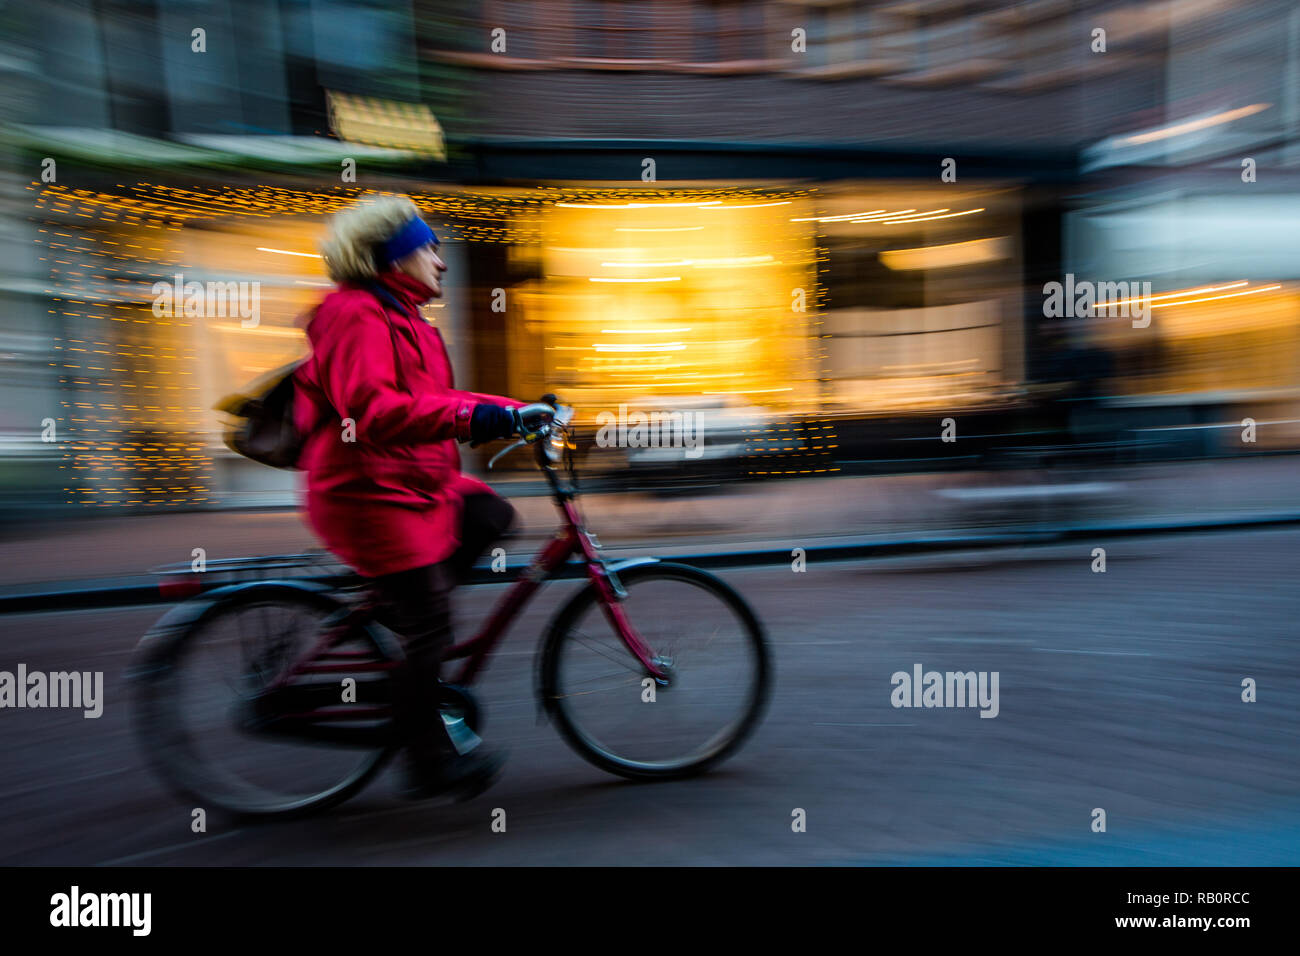 Woman riding vélo sur route en face des magasins à Amsterdam Banque D'Images